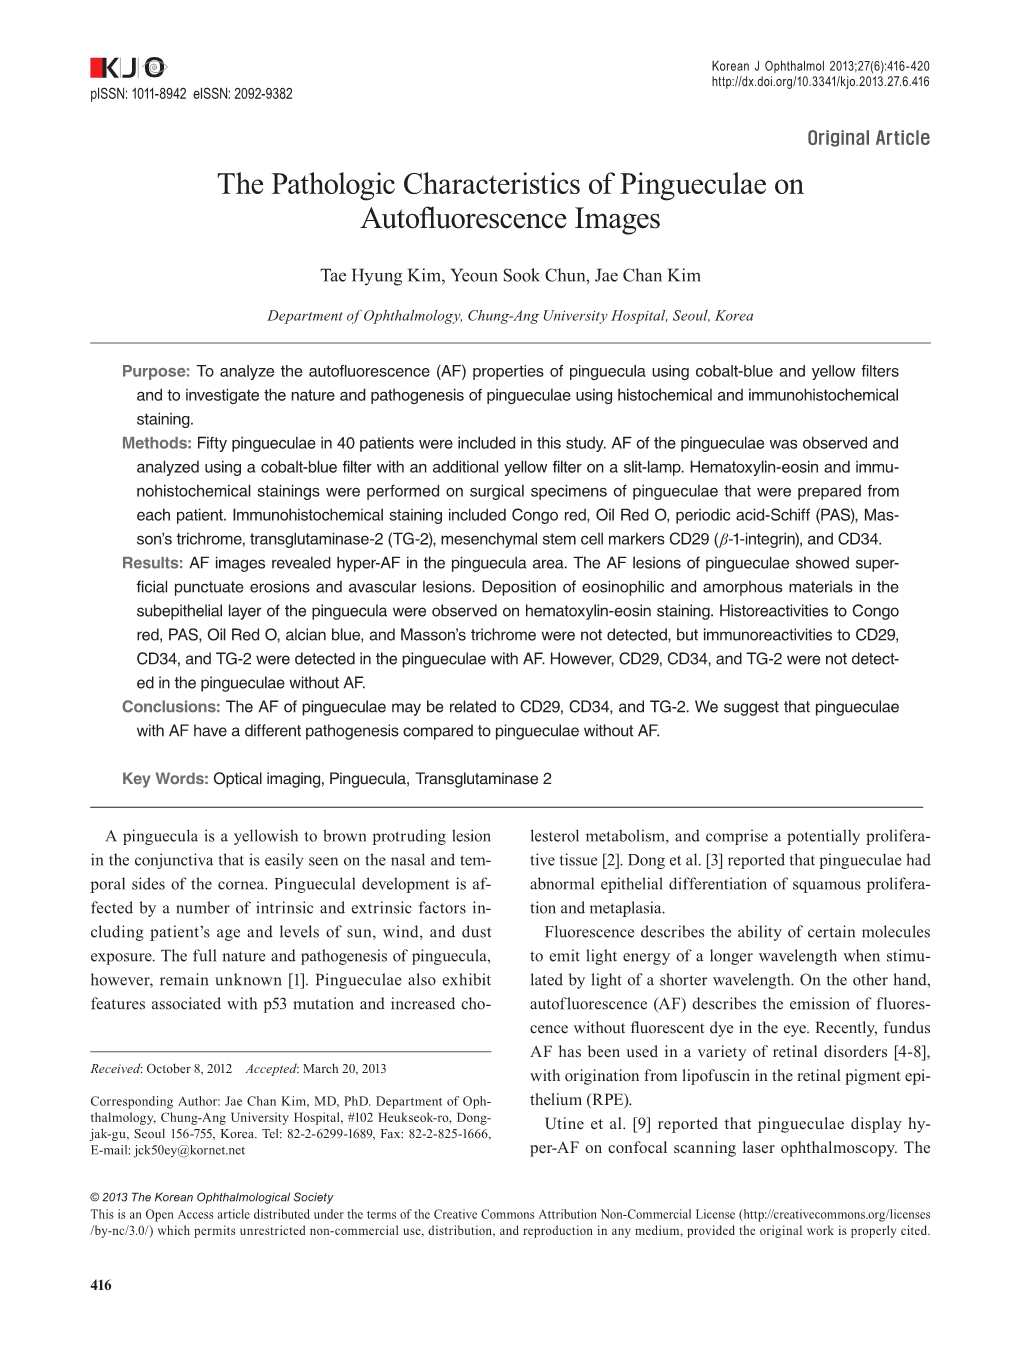 The Pathologic Characteristics of Pingueculae on Autofluorescence Images